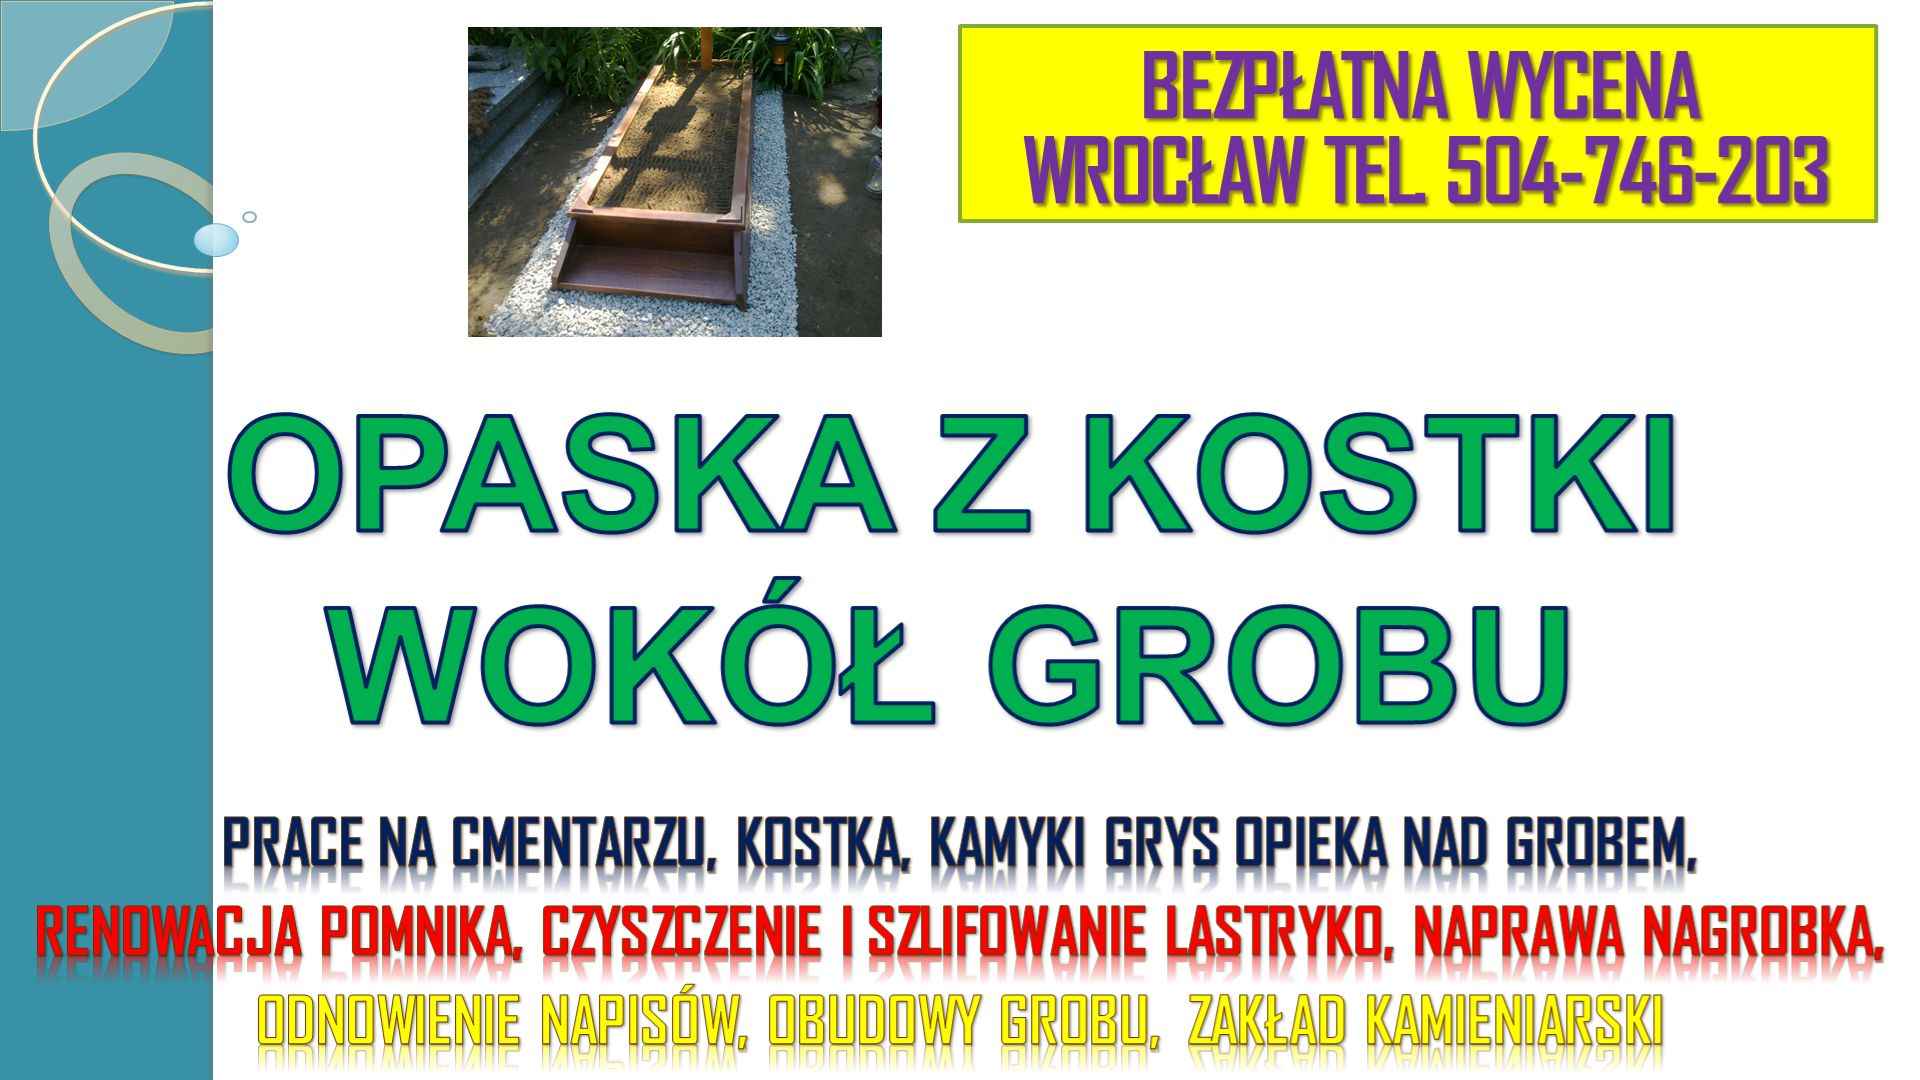 Opaska wokół pomnika, grobu, tel.504-746-203 Cena, Cmentarz Wrocław Psie Pole - zdjęcie 2